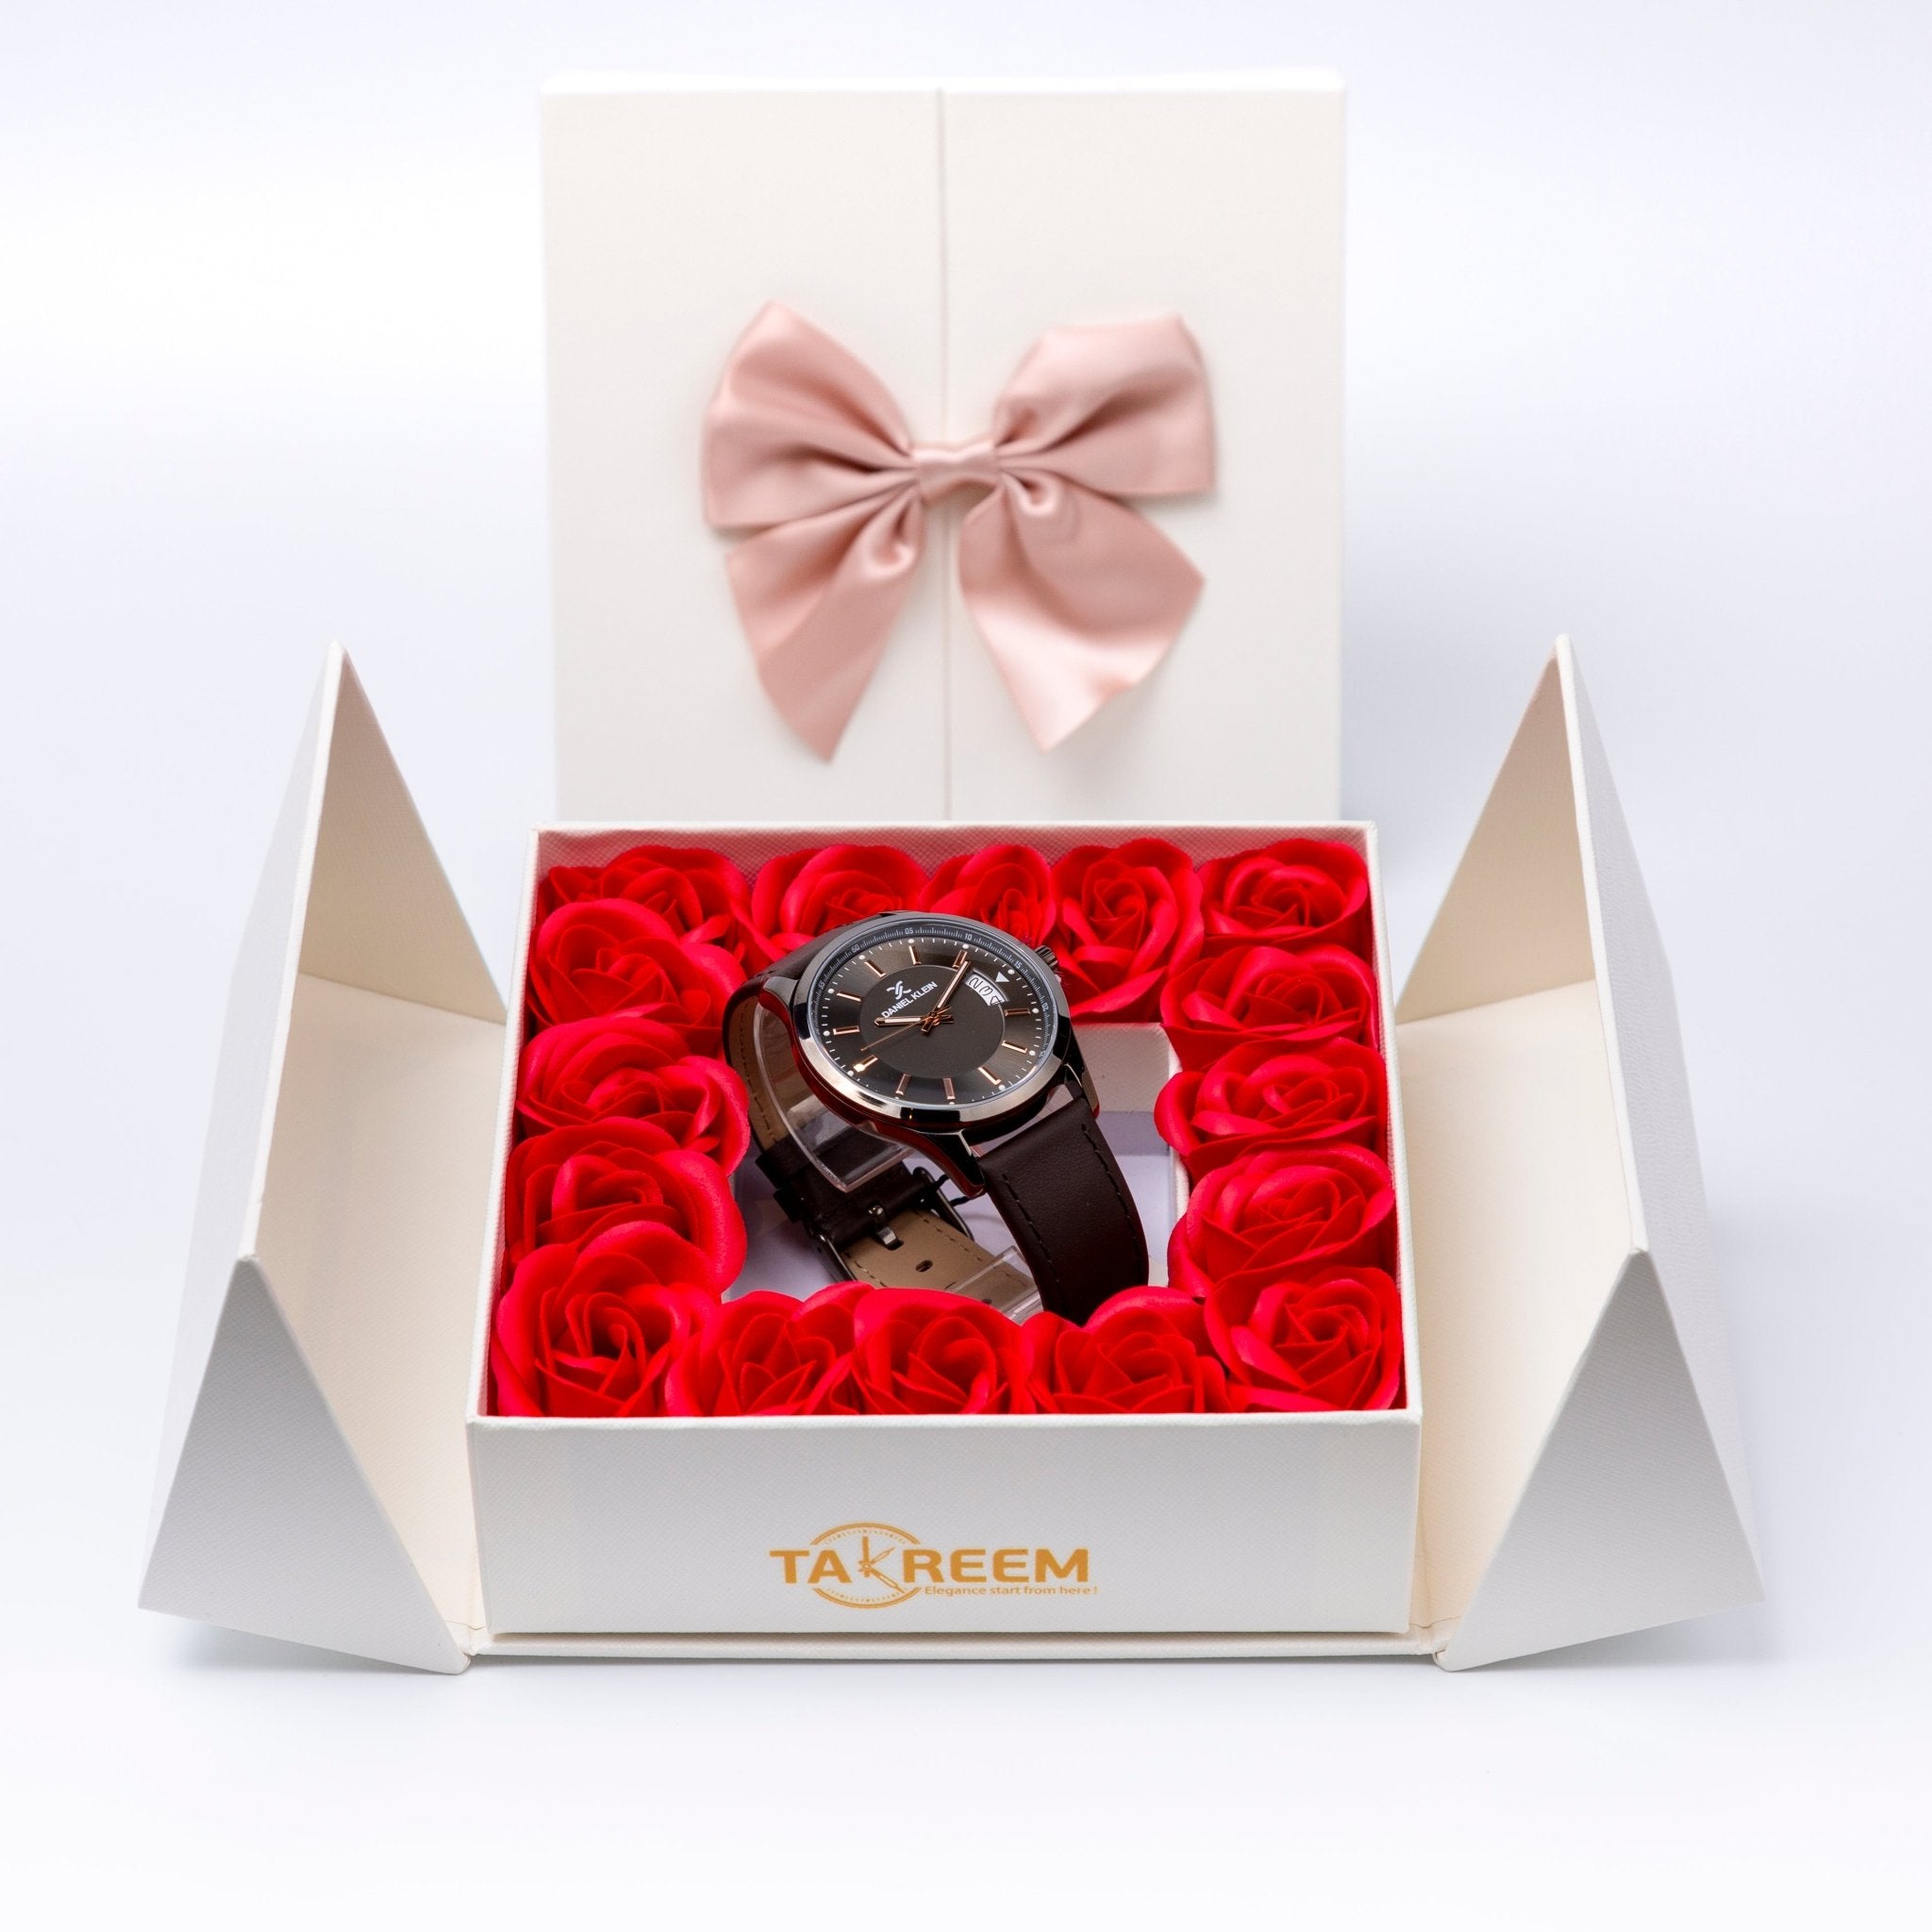 Flower Box - Gift For Men 8 - #shoFlower Box - Gift For Men 8p_name#Flower Box - Gift For Men 8Gift Boxes & TinsTakreemTakreem.joMenWatchFlower Box - Gift For Men 8 - Takreem.jo